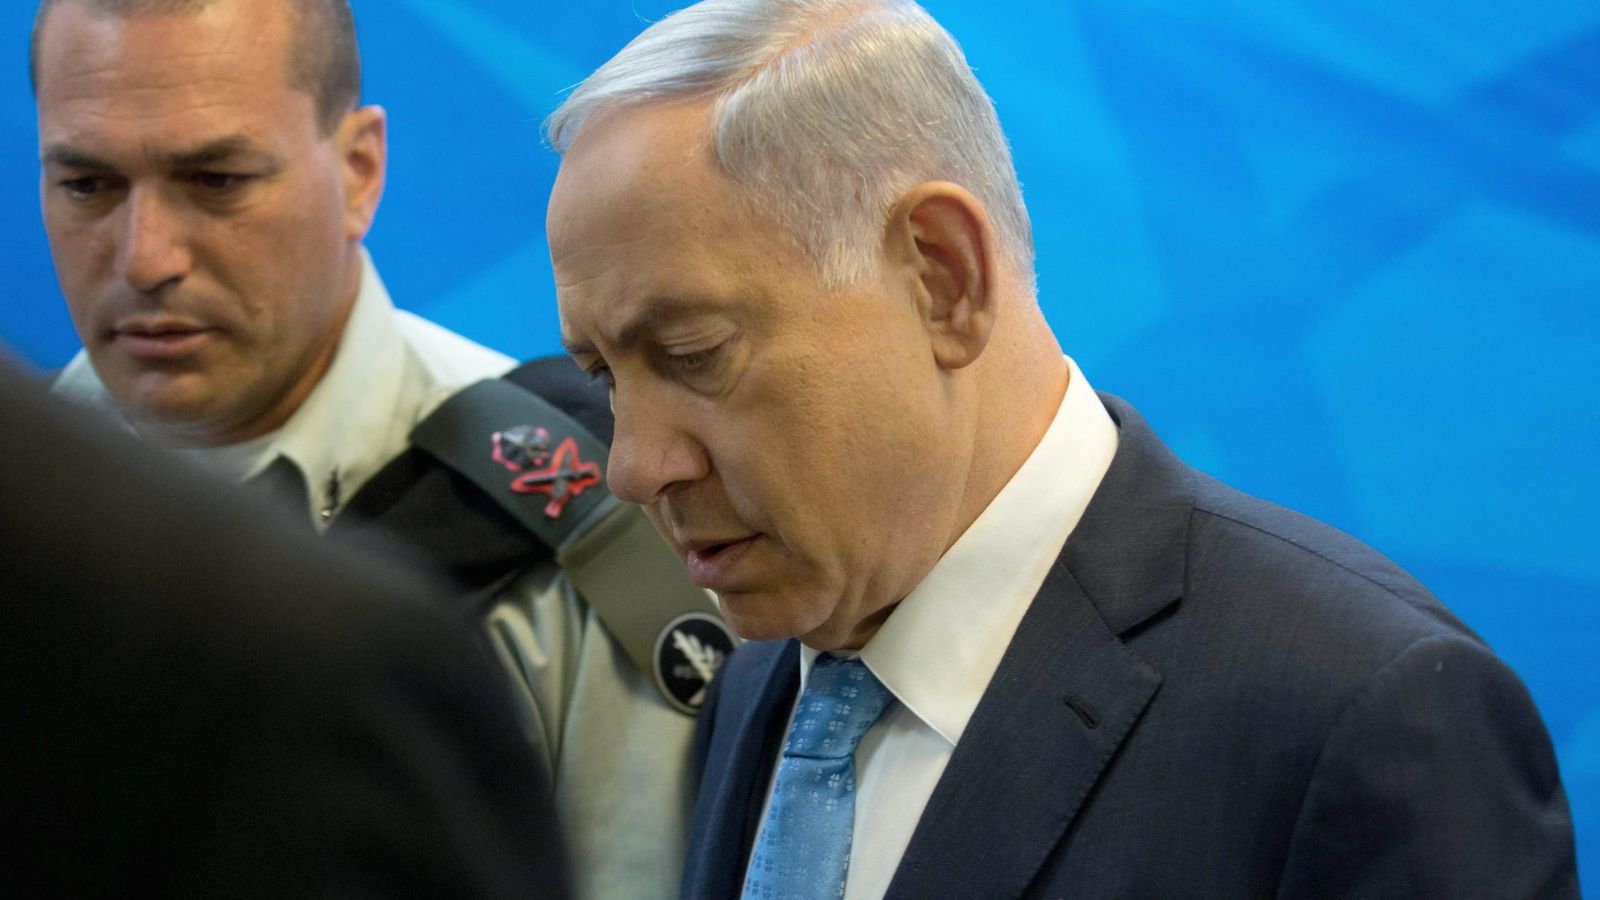 Foto: Después de ganar las elecciones, Netanyahu necesita una prórroga para formar gobierno después de no haber completado la composición del nuevo ejecutivo en el plazo previsto por ley (EFE)